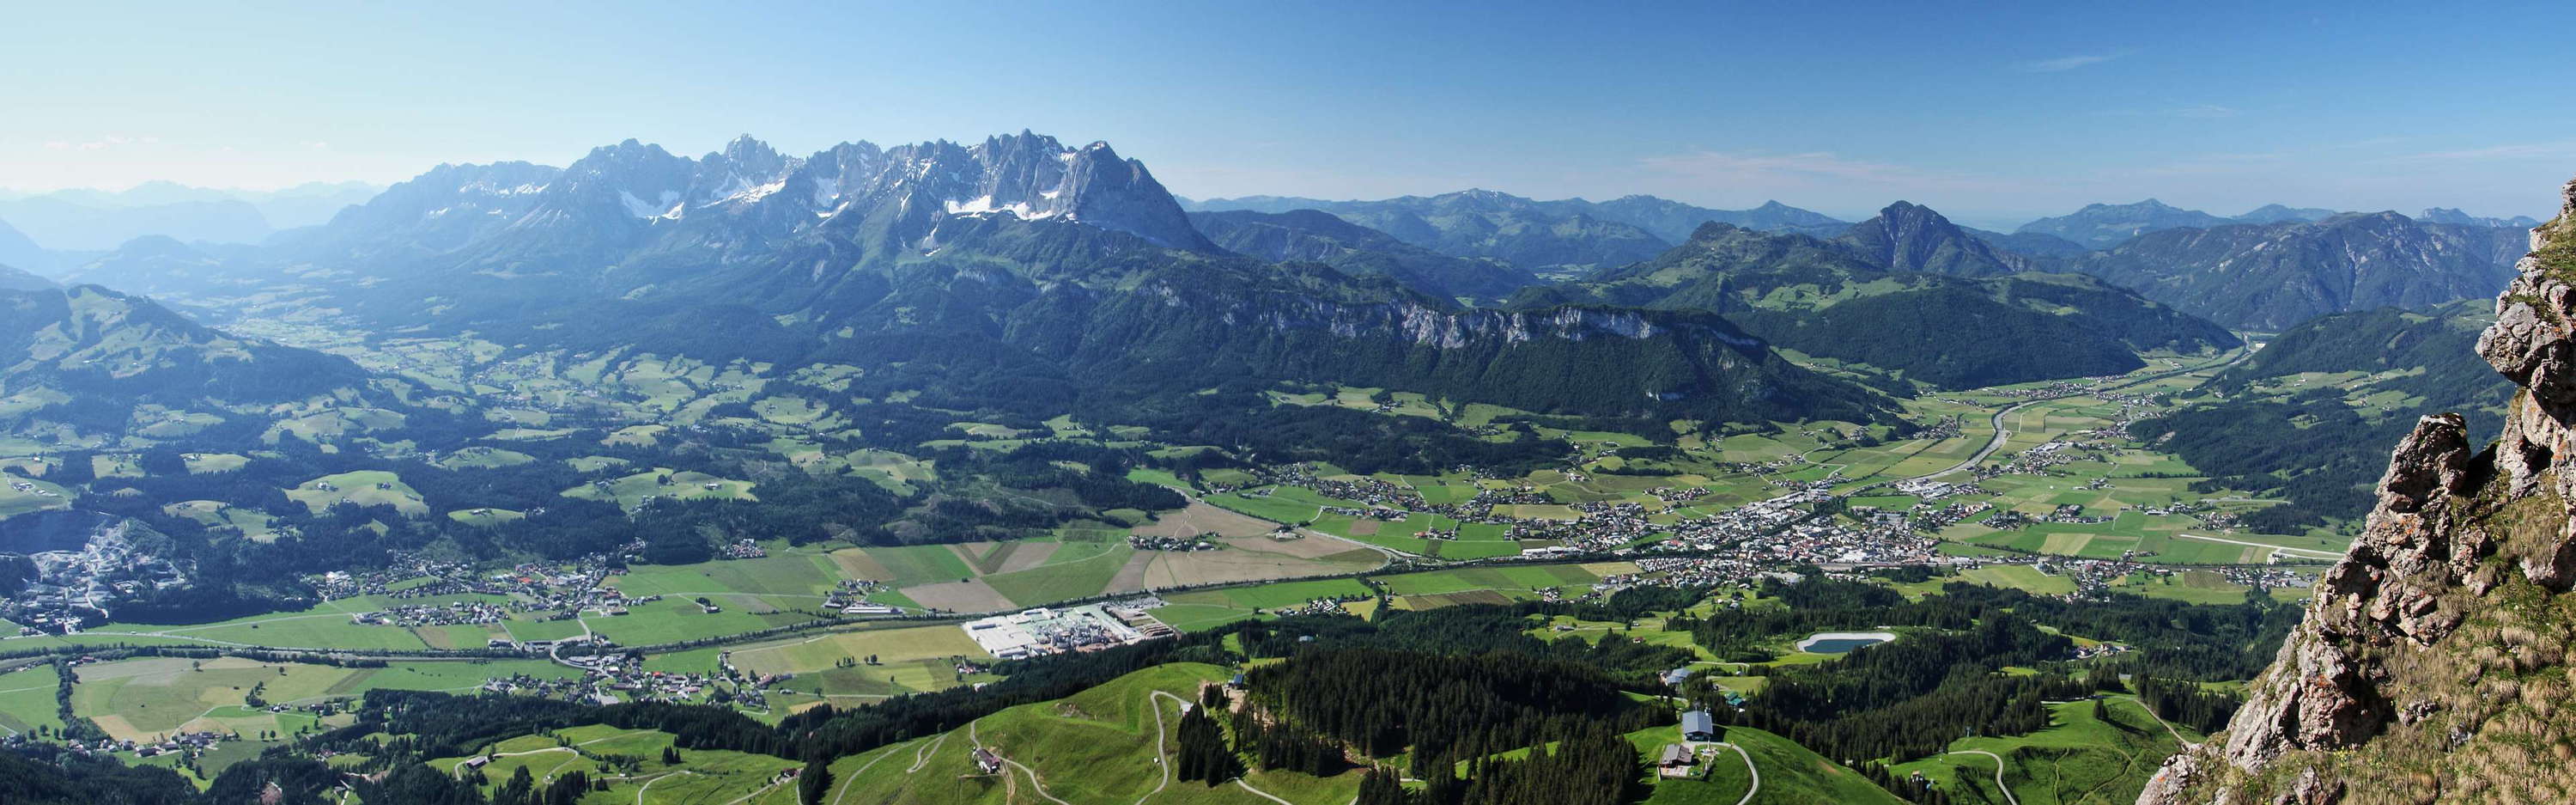 St. Johann in Tirol and Wilder Kaiser